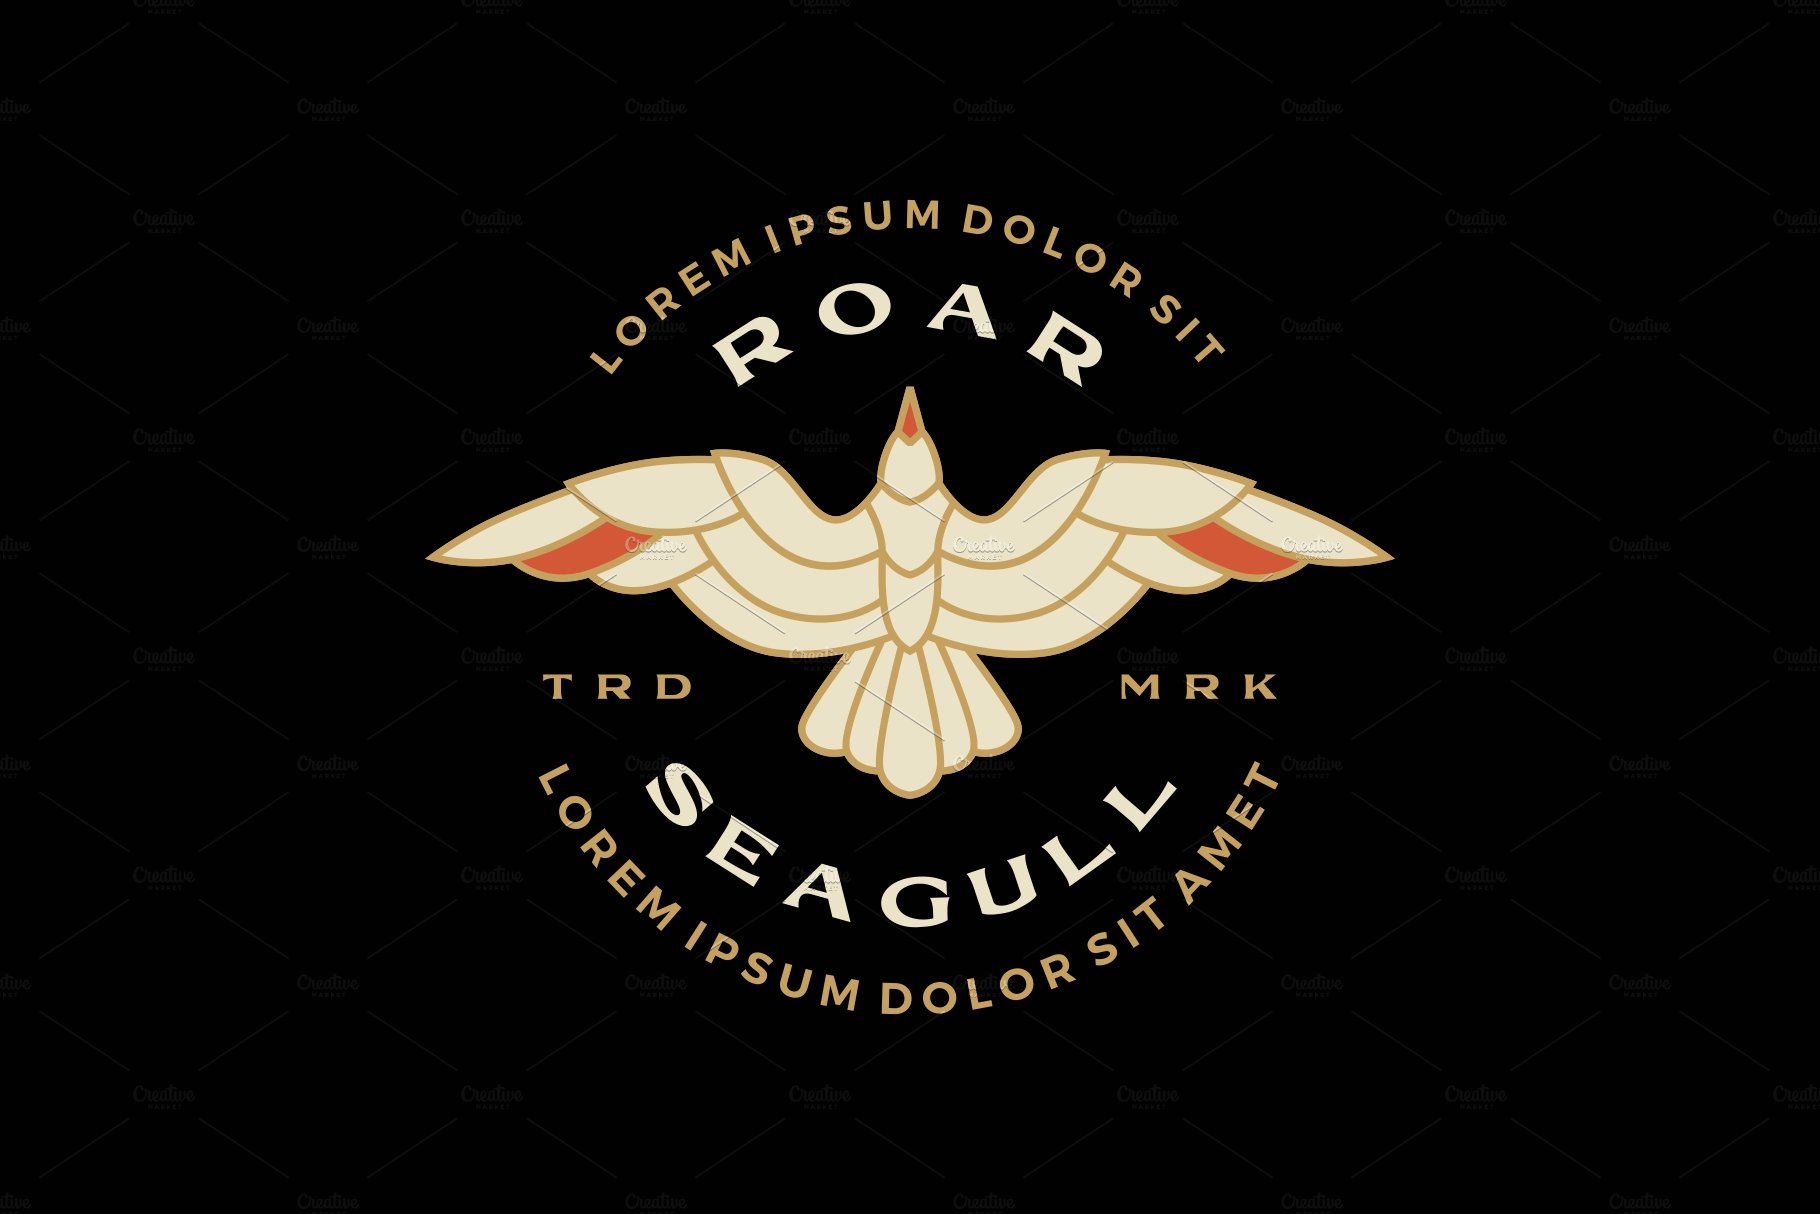 seagull badge roar flying logo cover image.